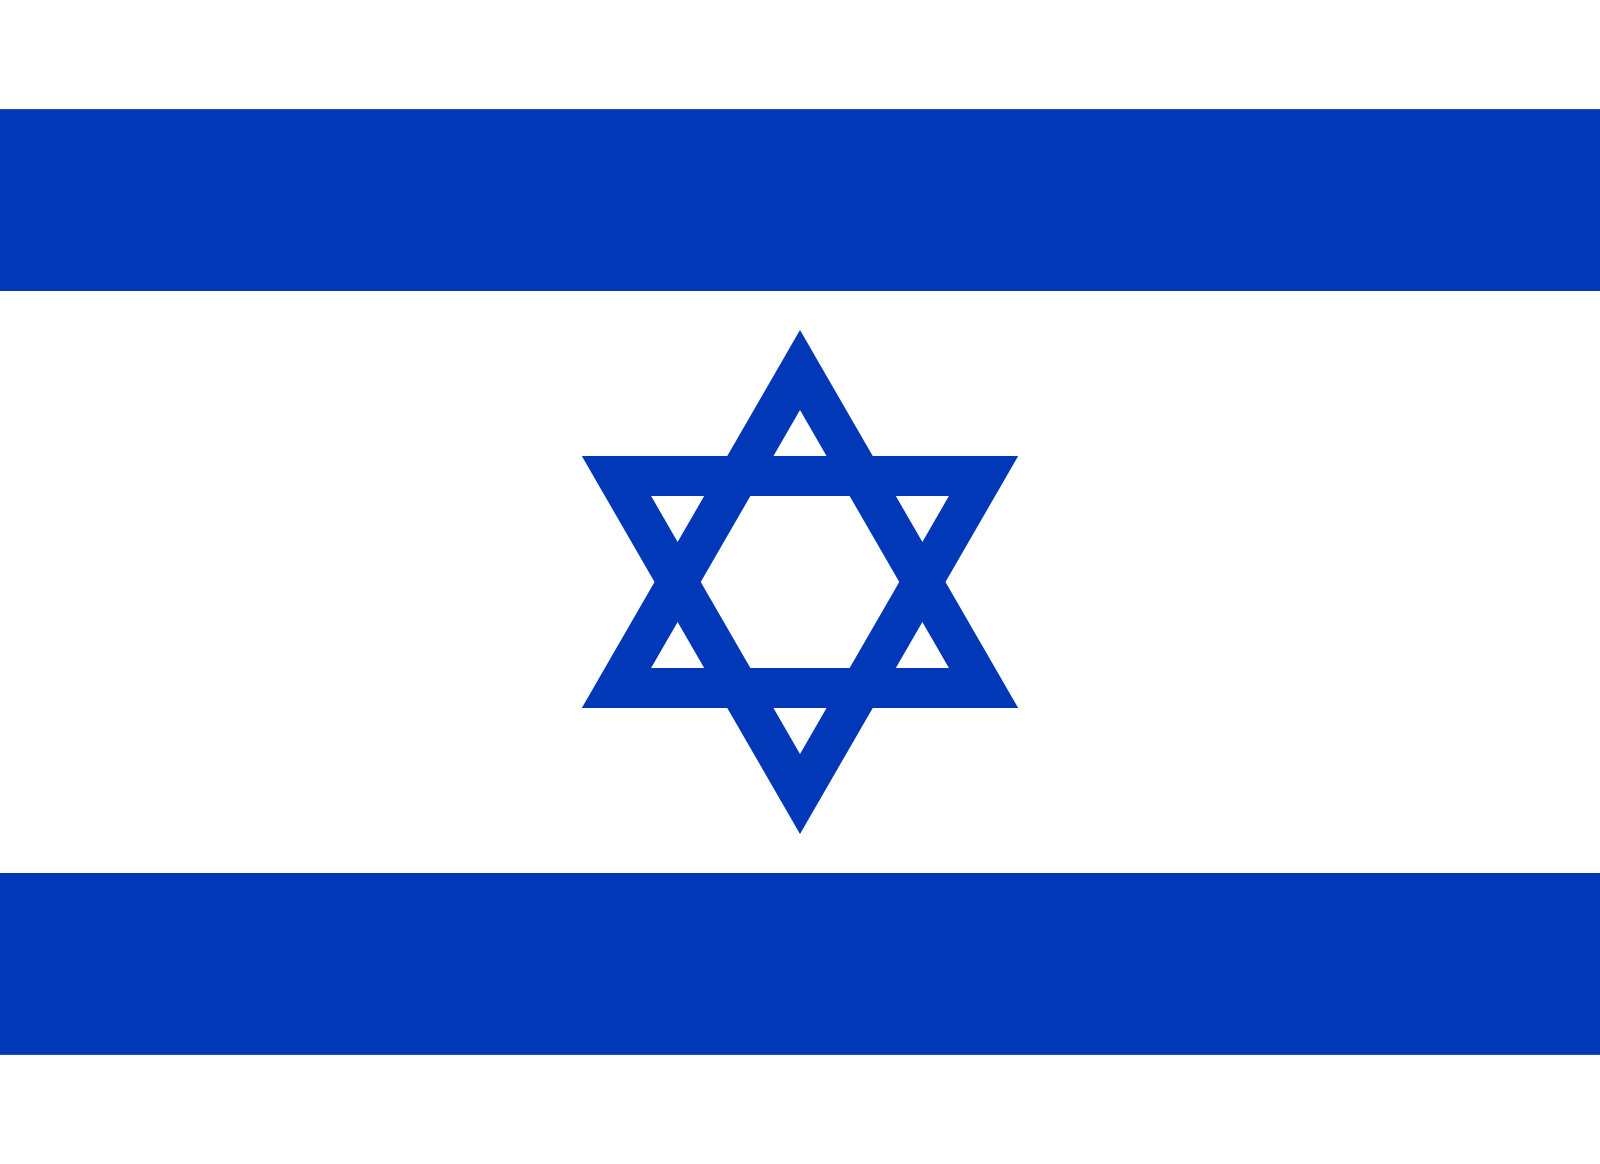 Bild der Staatsflagge Israel - mit einer Auflösung von 1600x1164 - Naher Osten